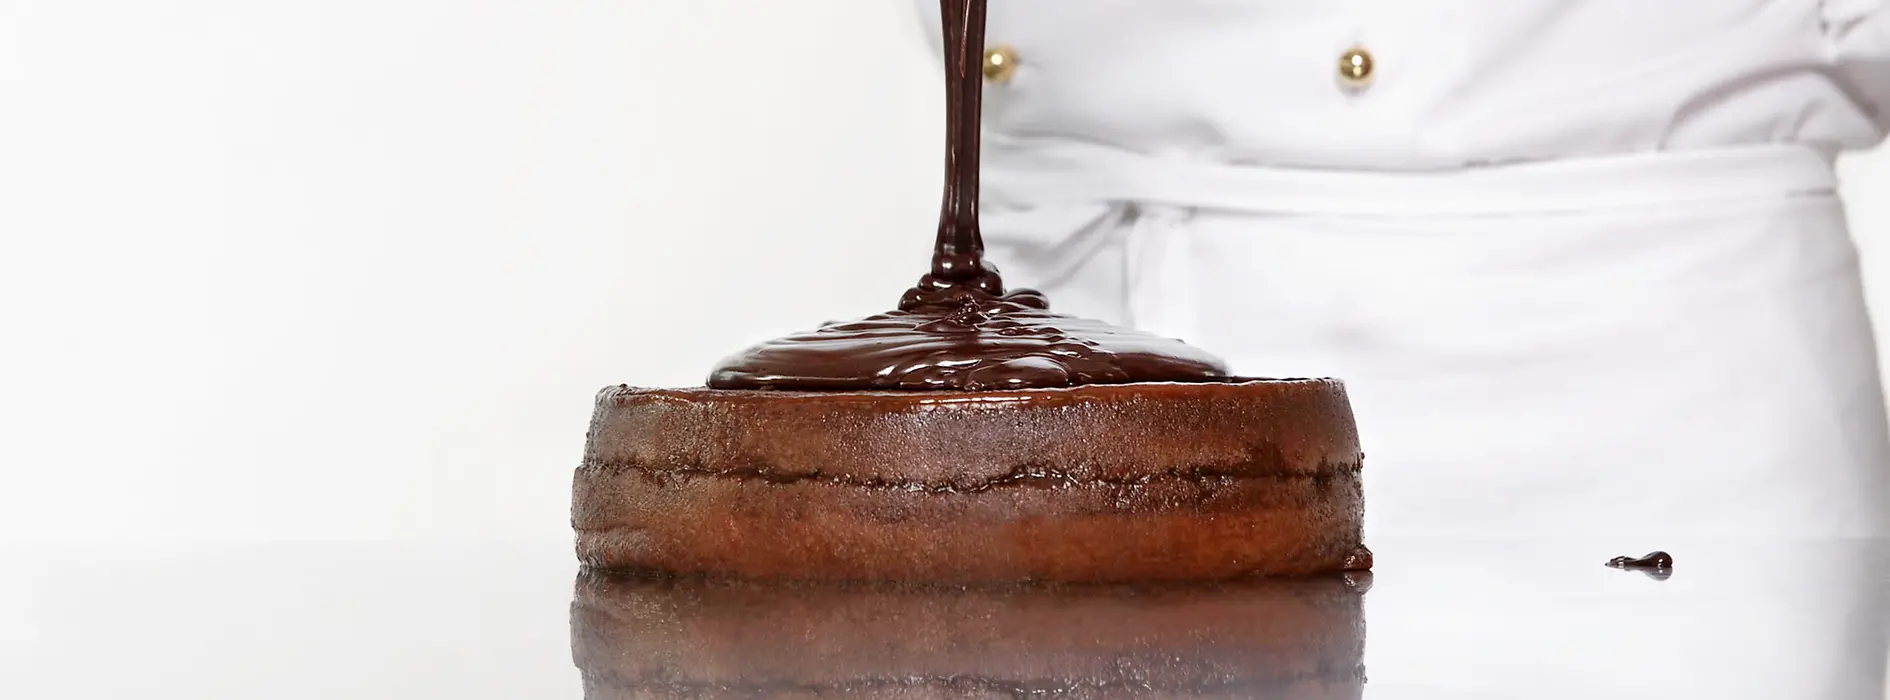 Торт Захер, поливаемый шоколадной глазурью